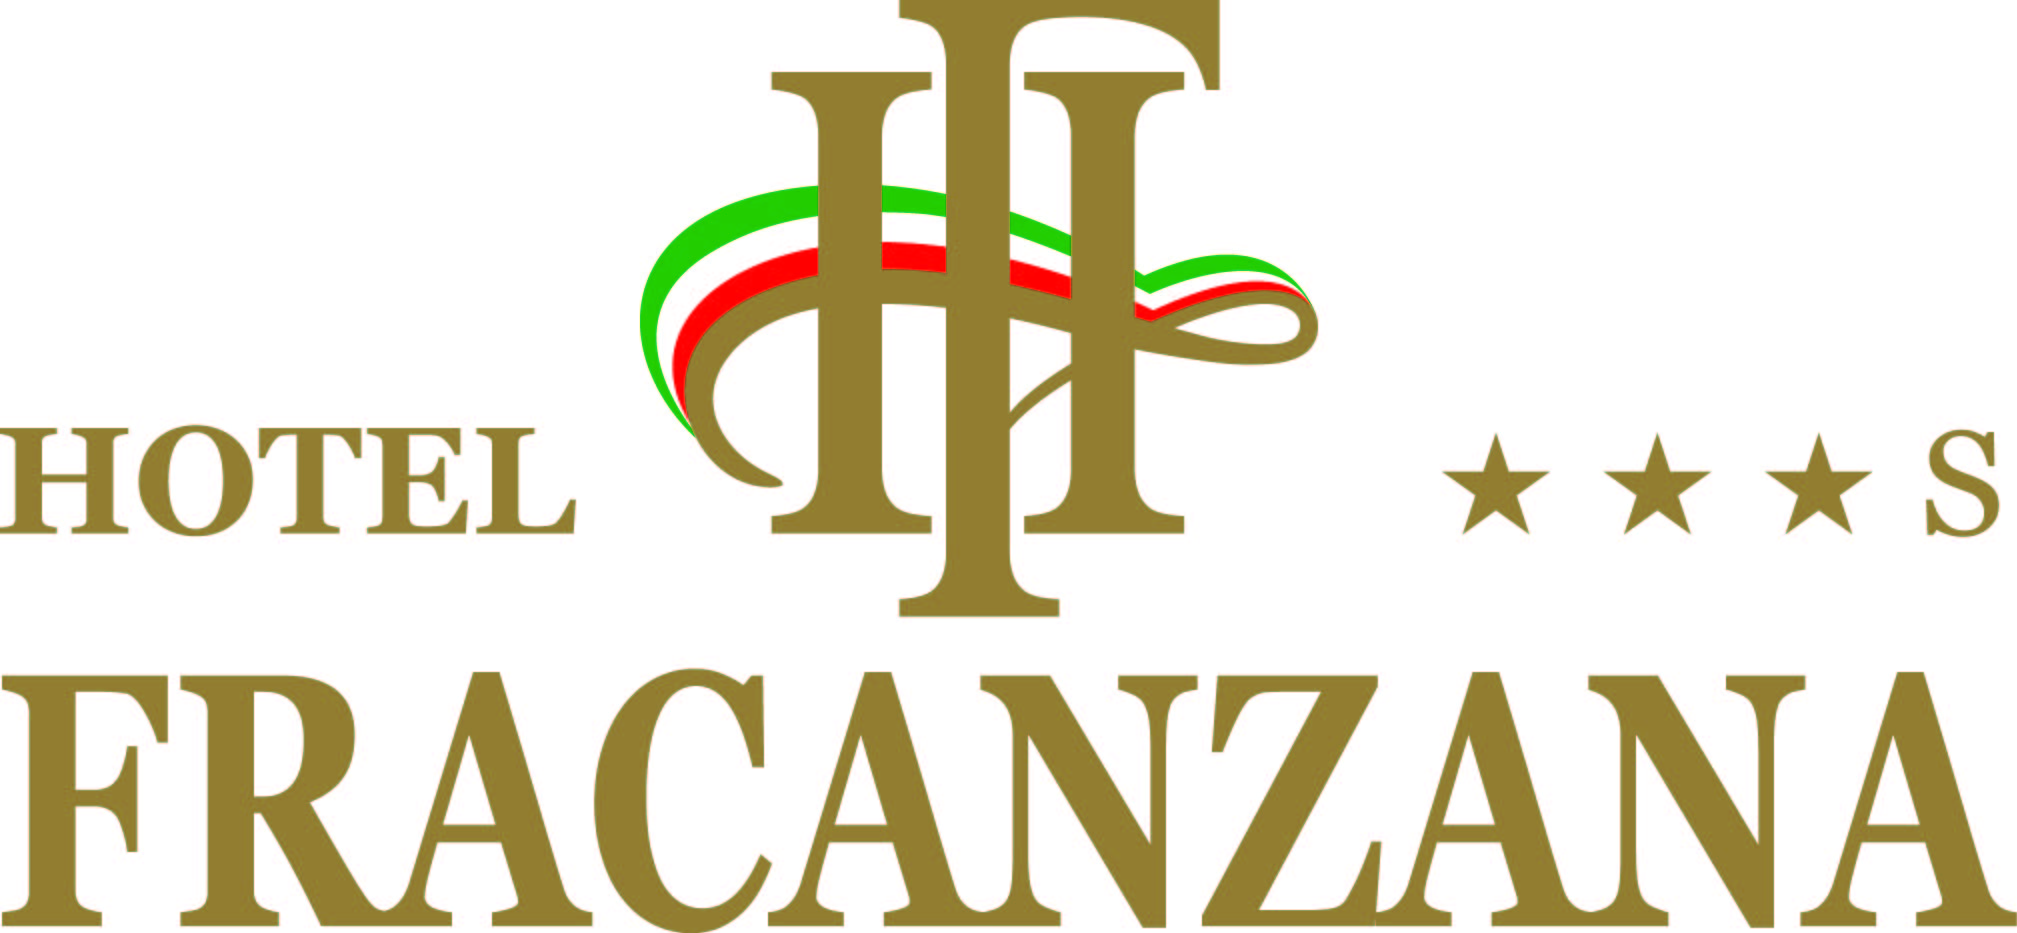 Hotel Fracanzana